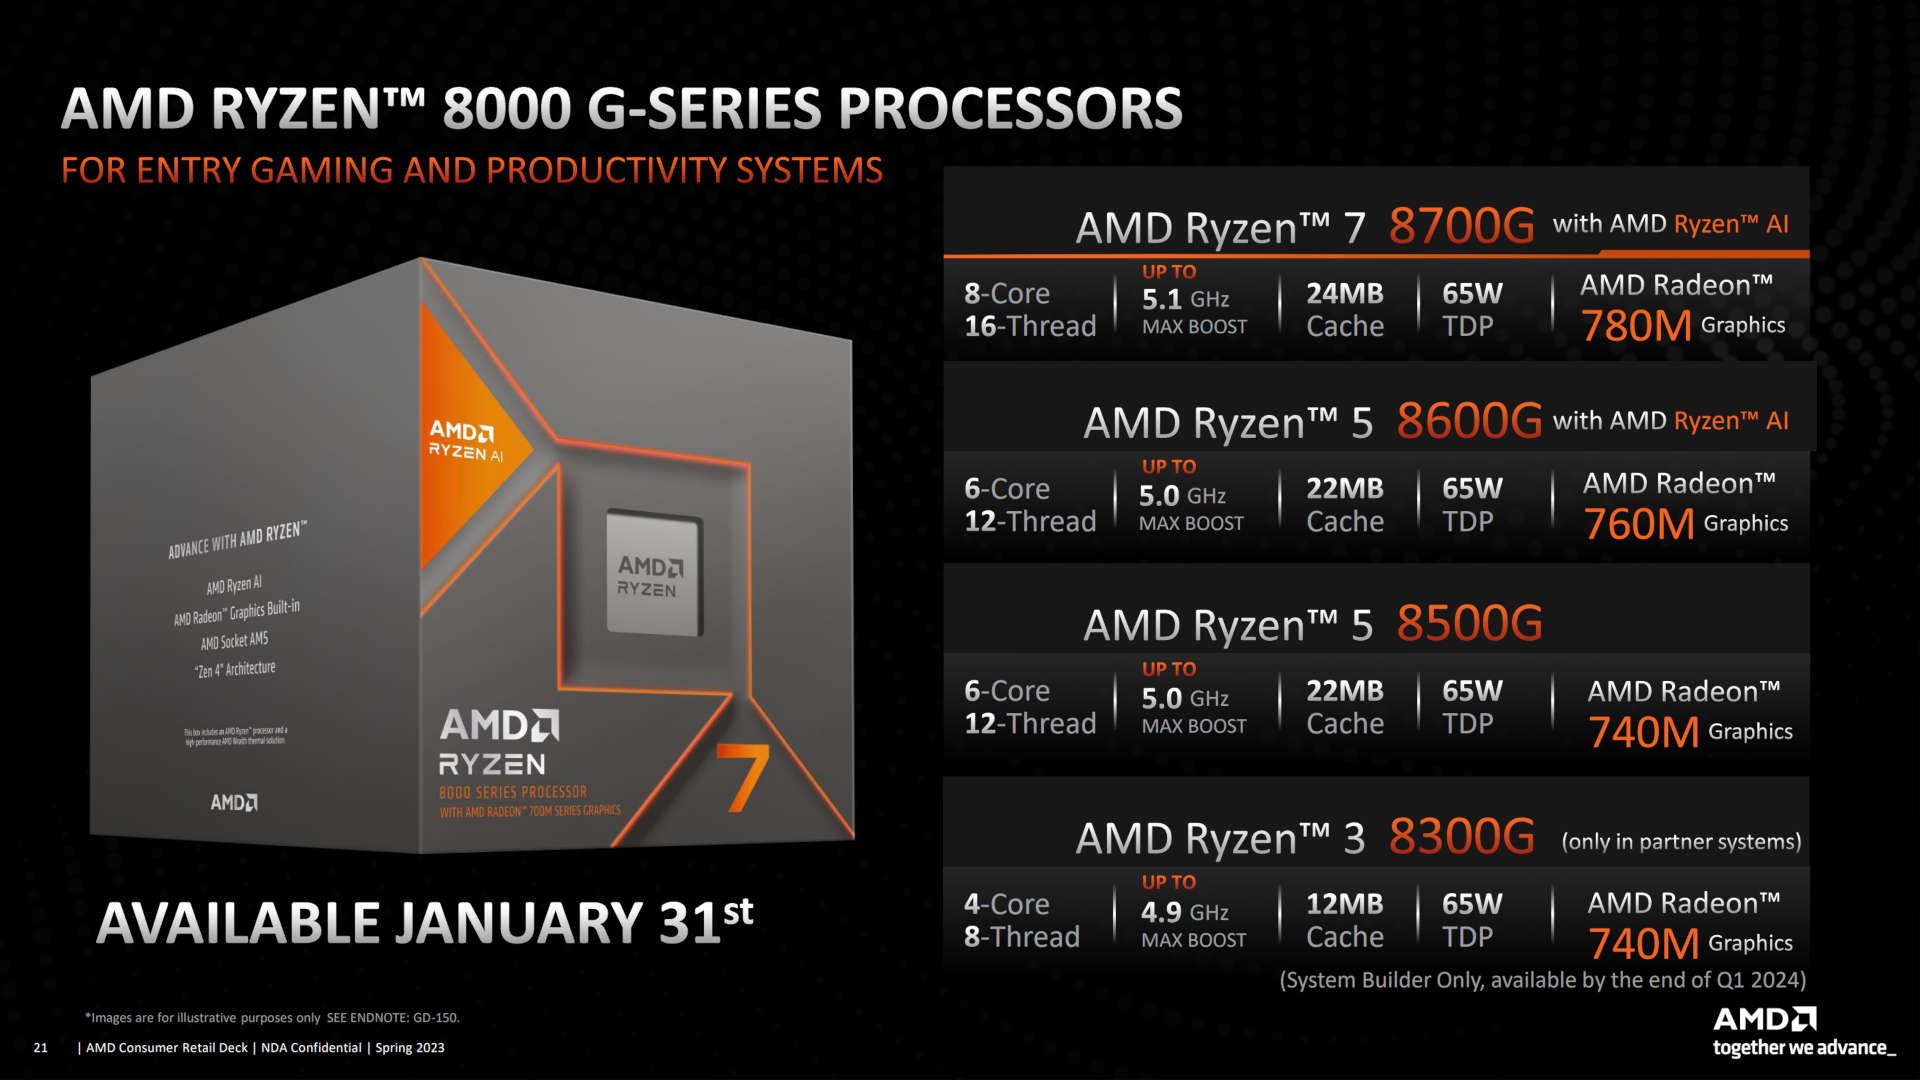 Spezifikationen für die Prozessoren der AMD Ryzen 8000G-Serie